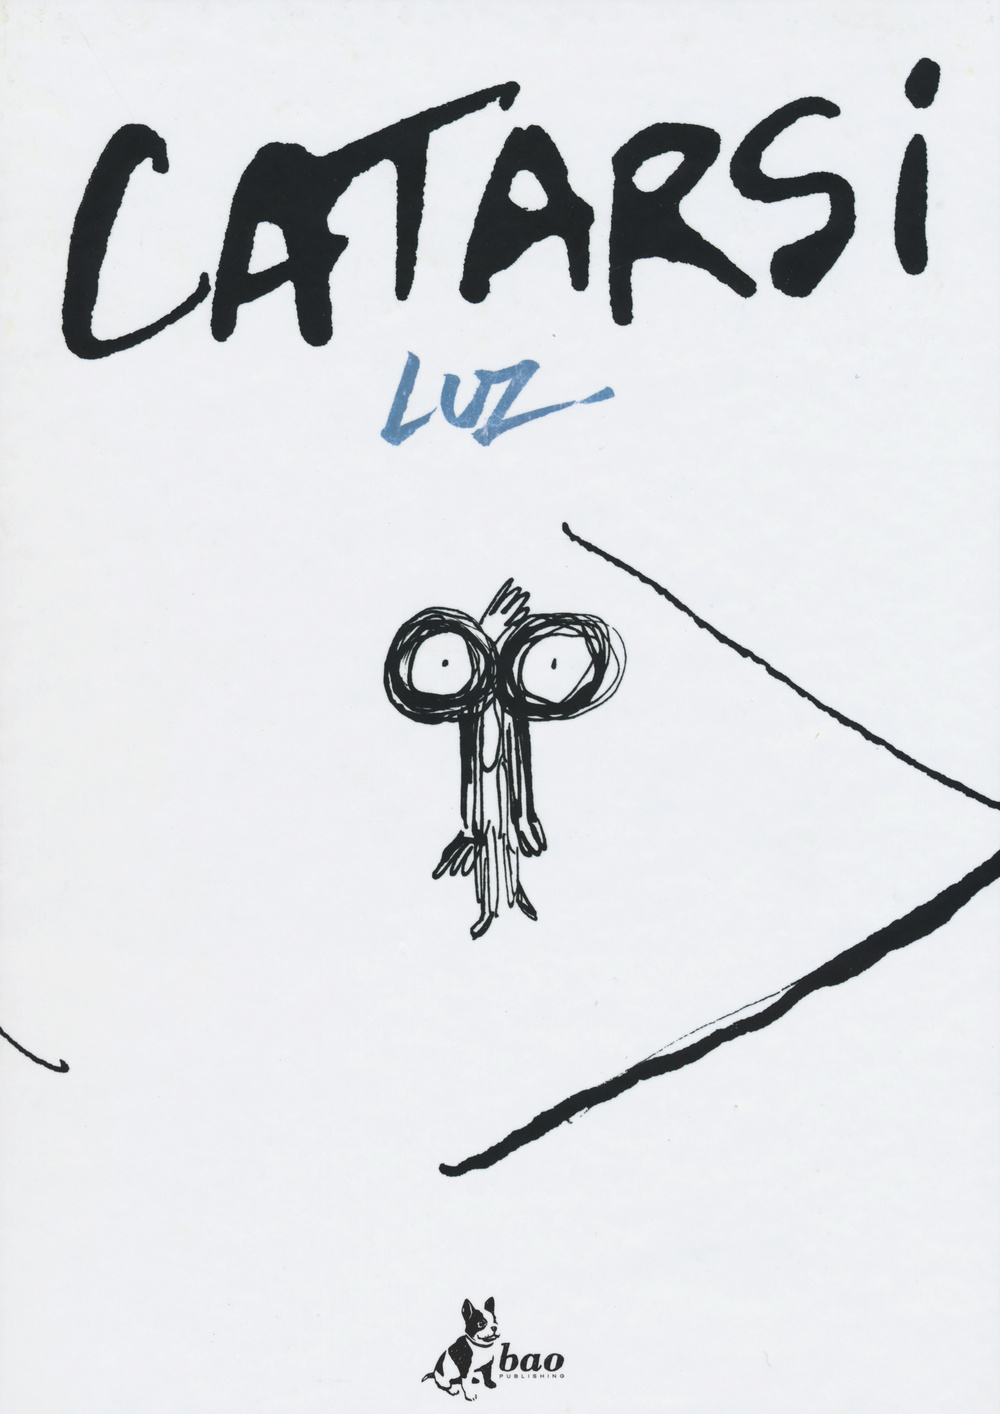 Luz - Catarsi